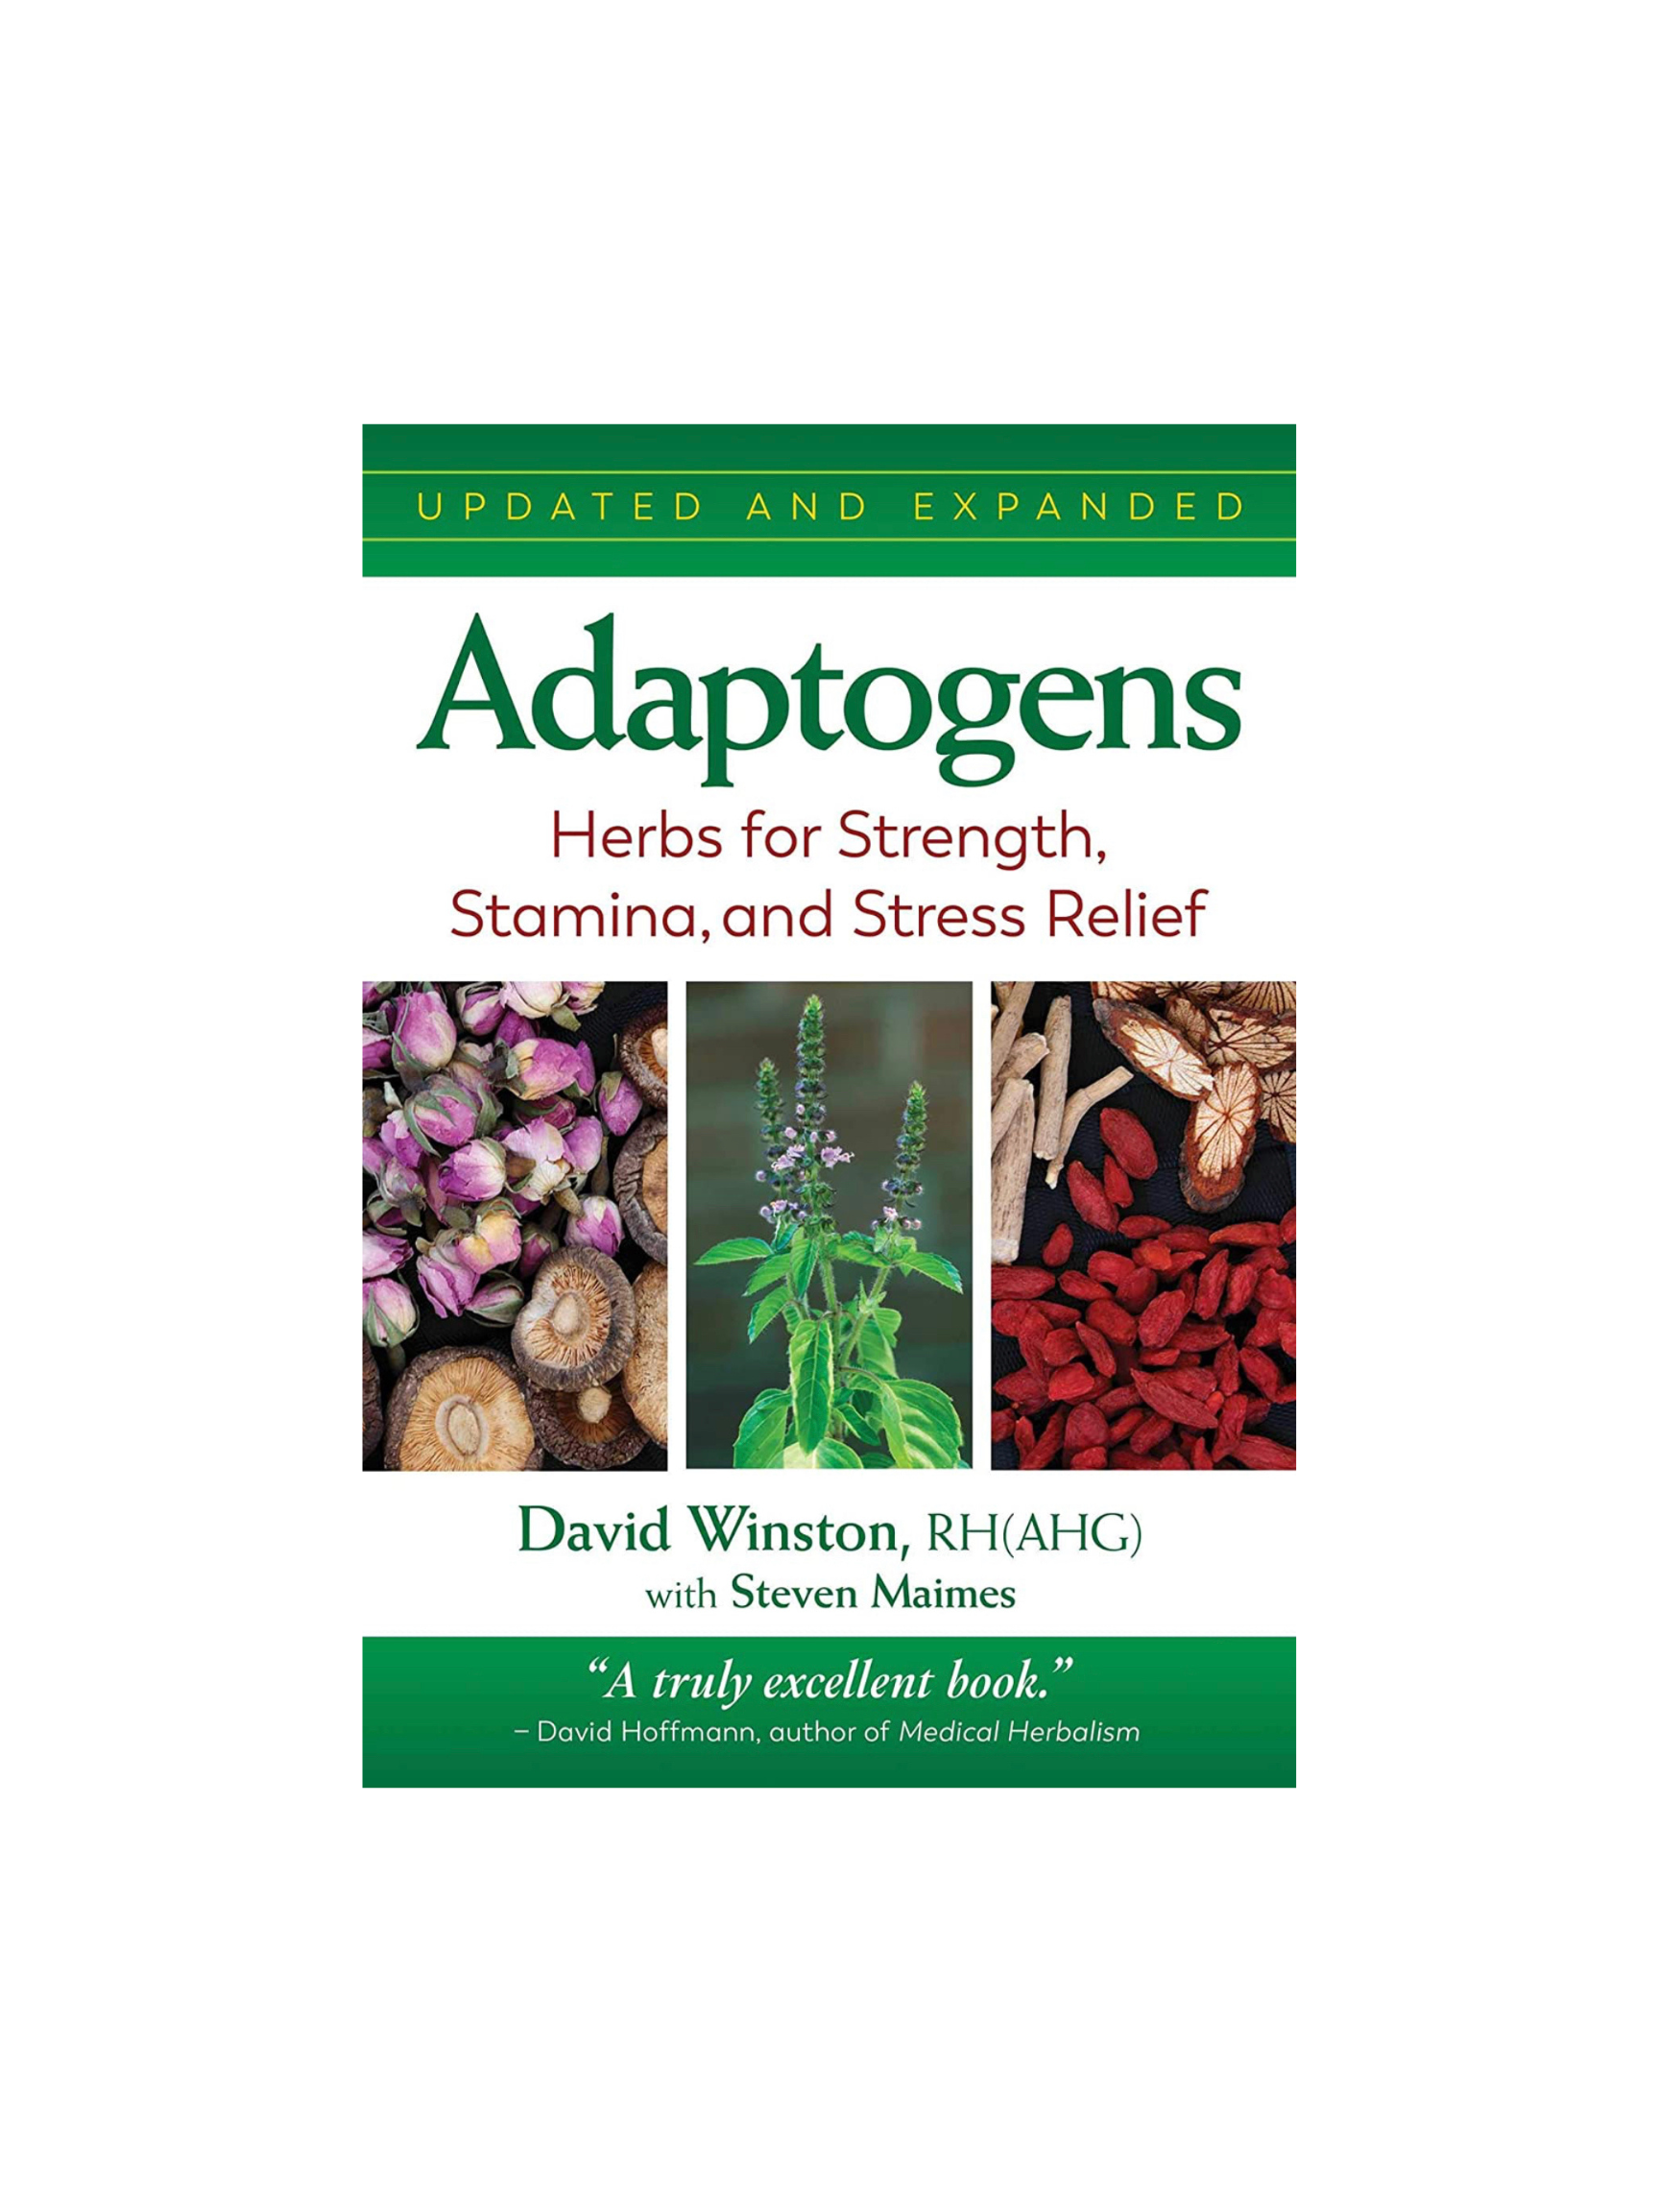 Adaptogen herbal extracts